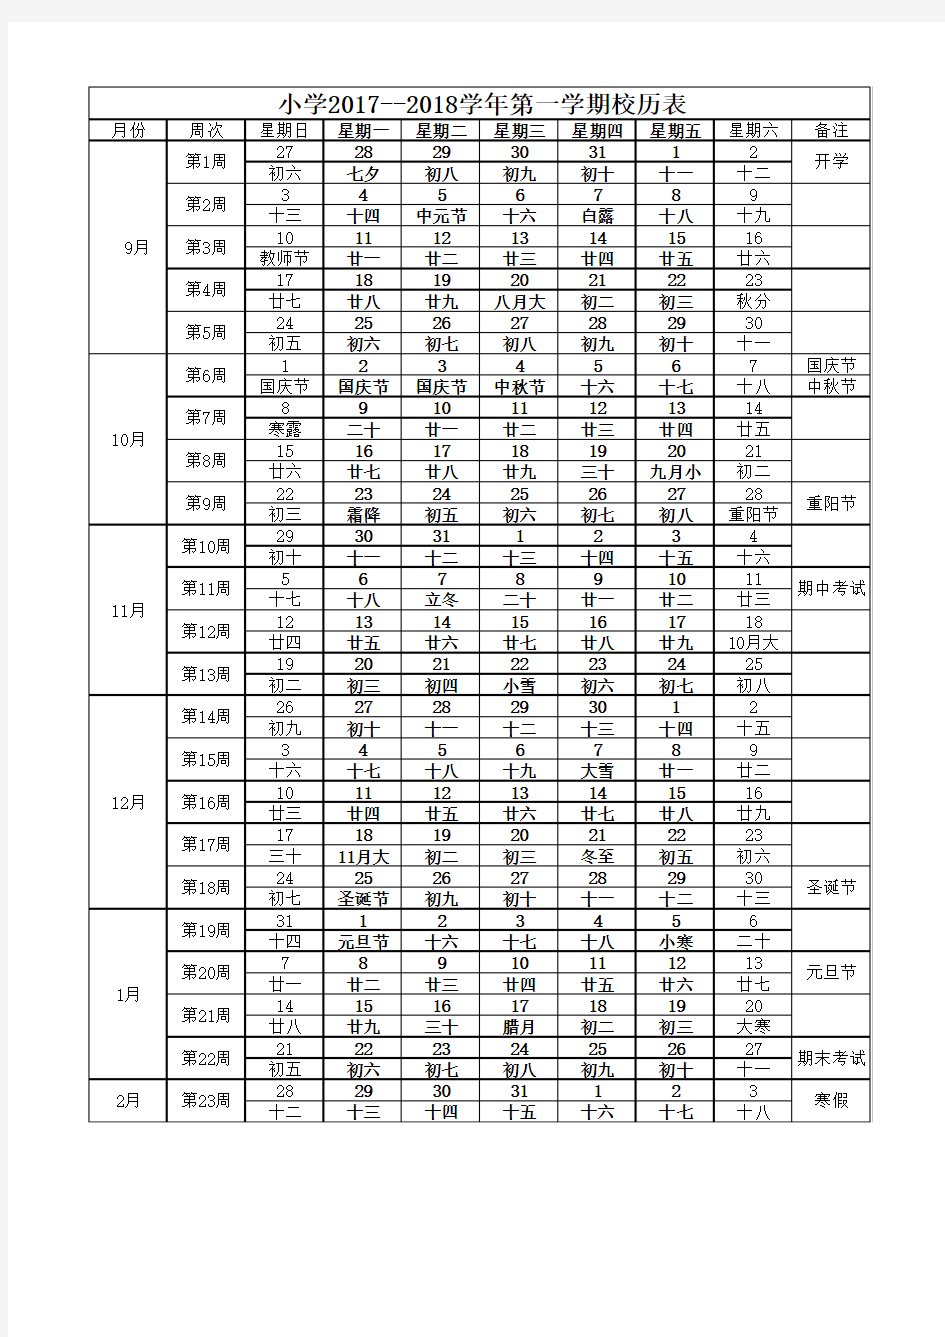 中小学2017-2018学年第一学期校历表